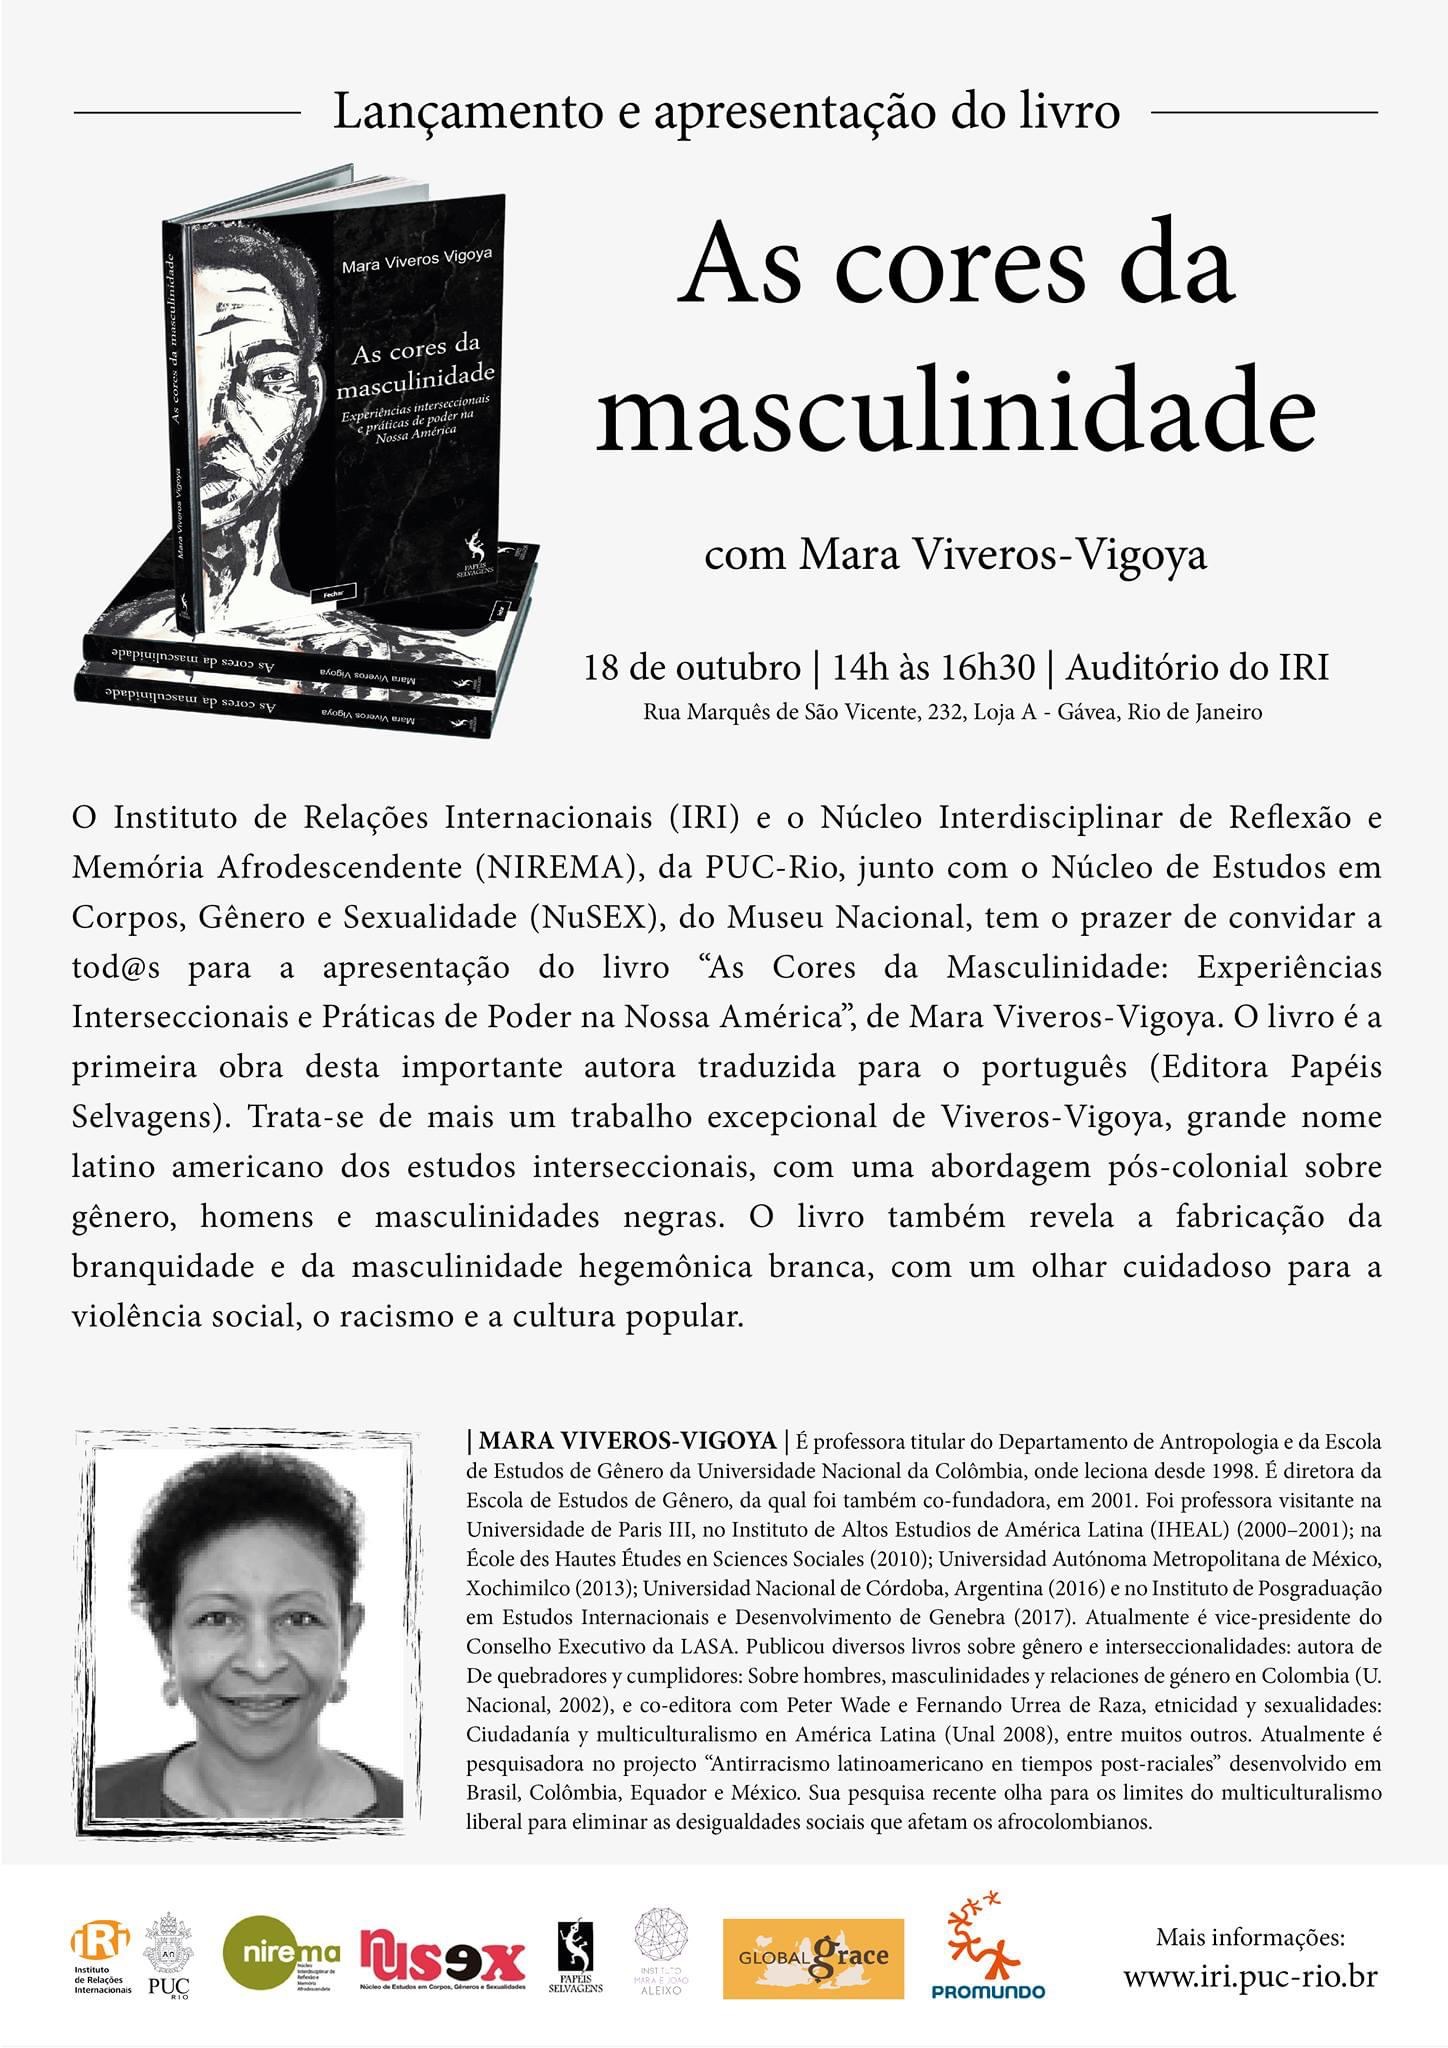 Lançamento do Livro “As Cores da Masculinidade”, de Mara Viveros-Vigoya